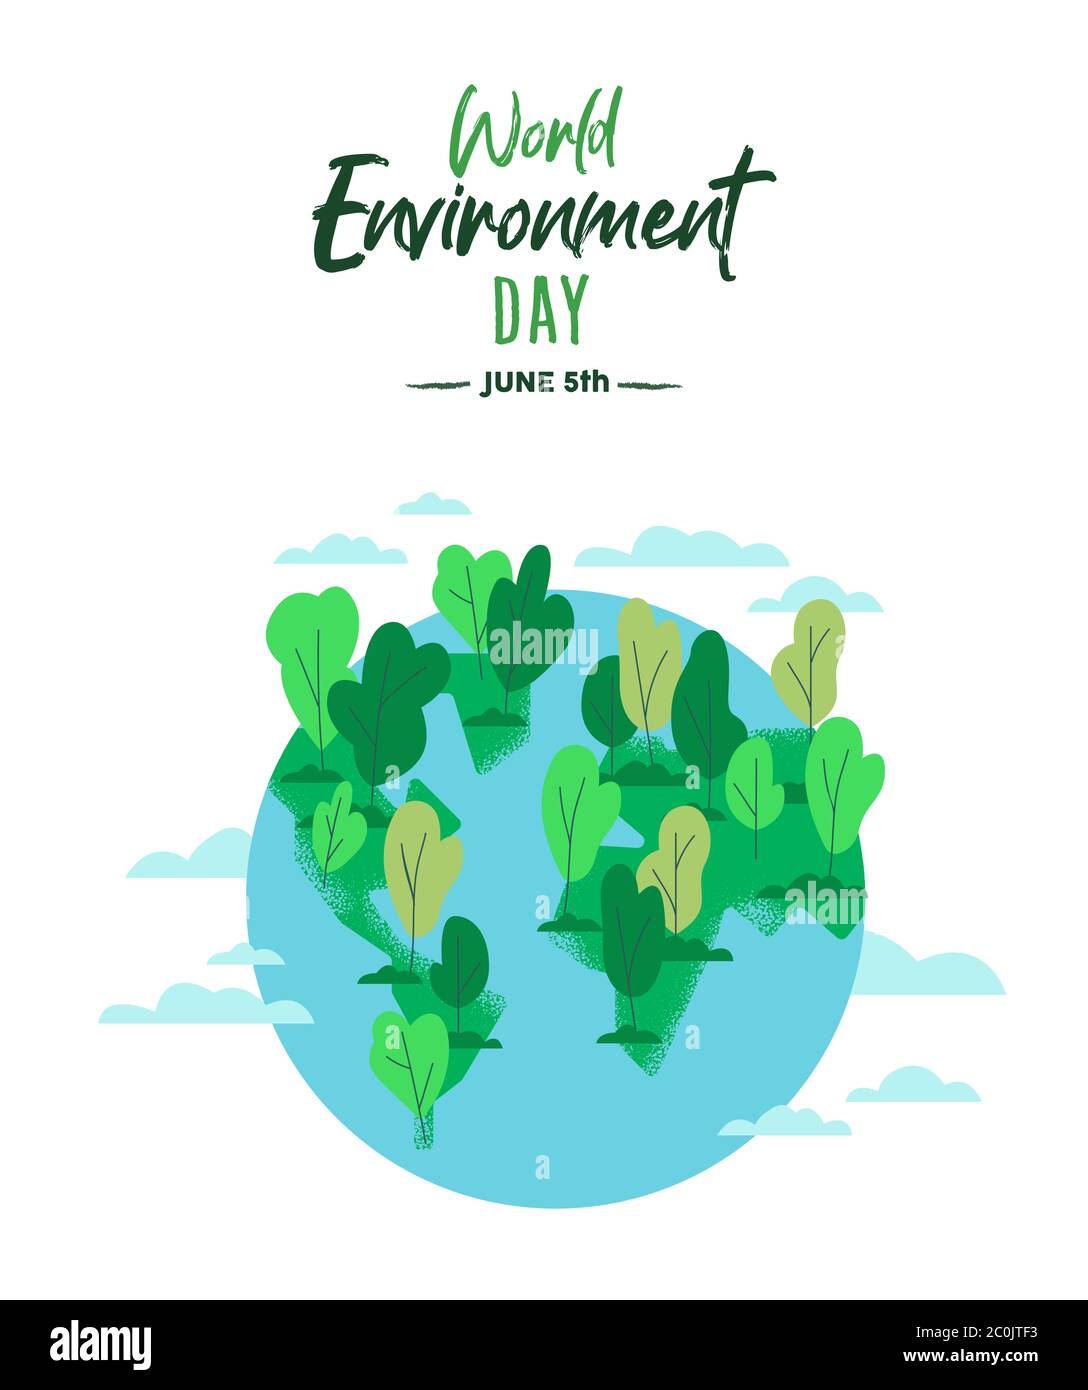 Weltumwelttag Illustration der grünen Erde für 5. juni Natur Urlaub. Sauberer Planet mit Bäumen und blauem Wasser im flachen Cartoon-Stil. Stock Vektor